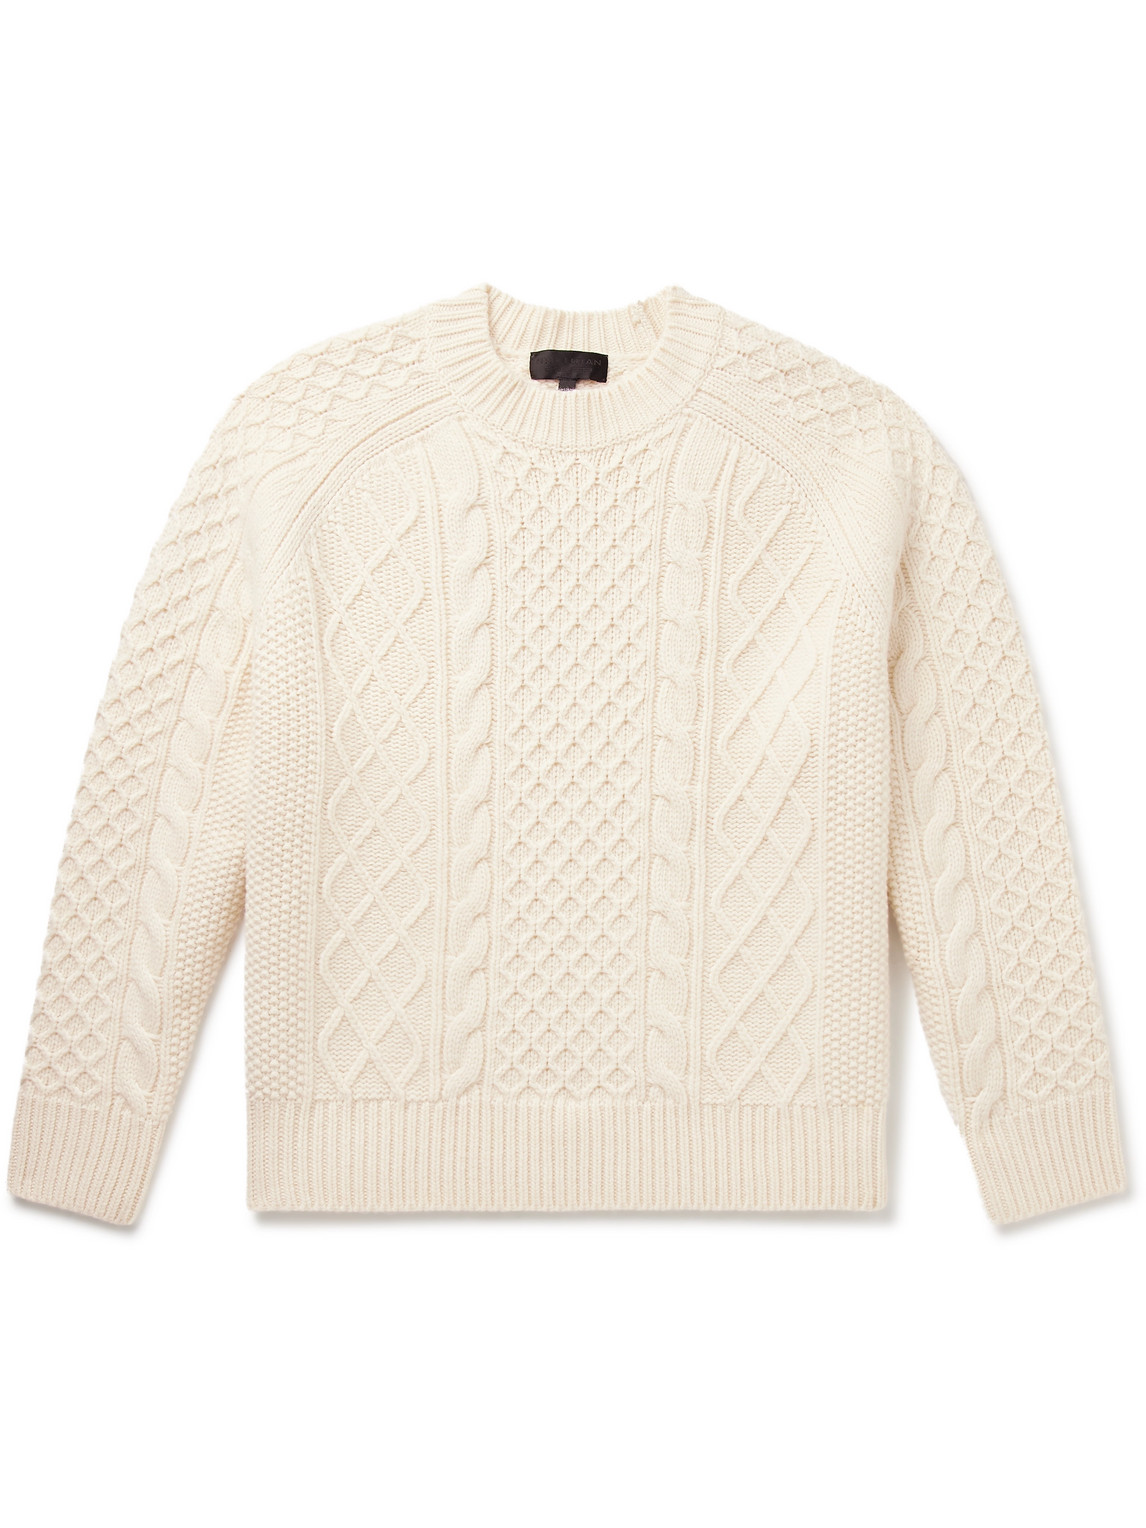 Nili Lotan - Carran Cable-Knit Wool Mock-Neck Sweater - Men - Neutrals - L von Nili Lotan